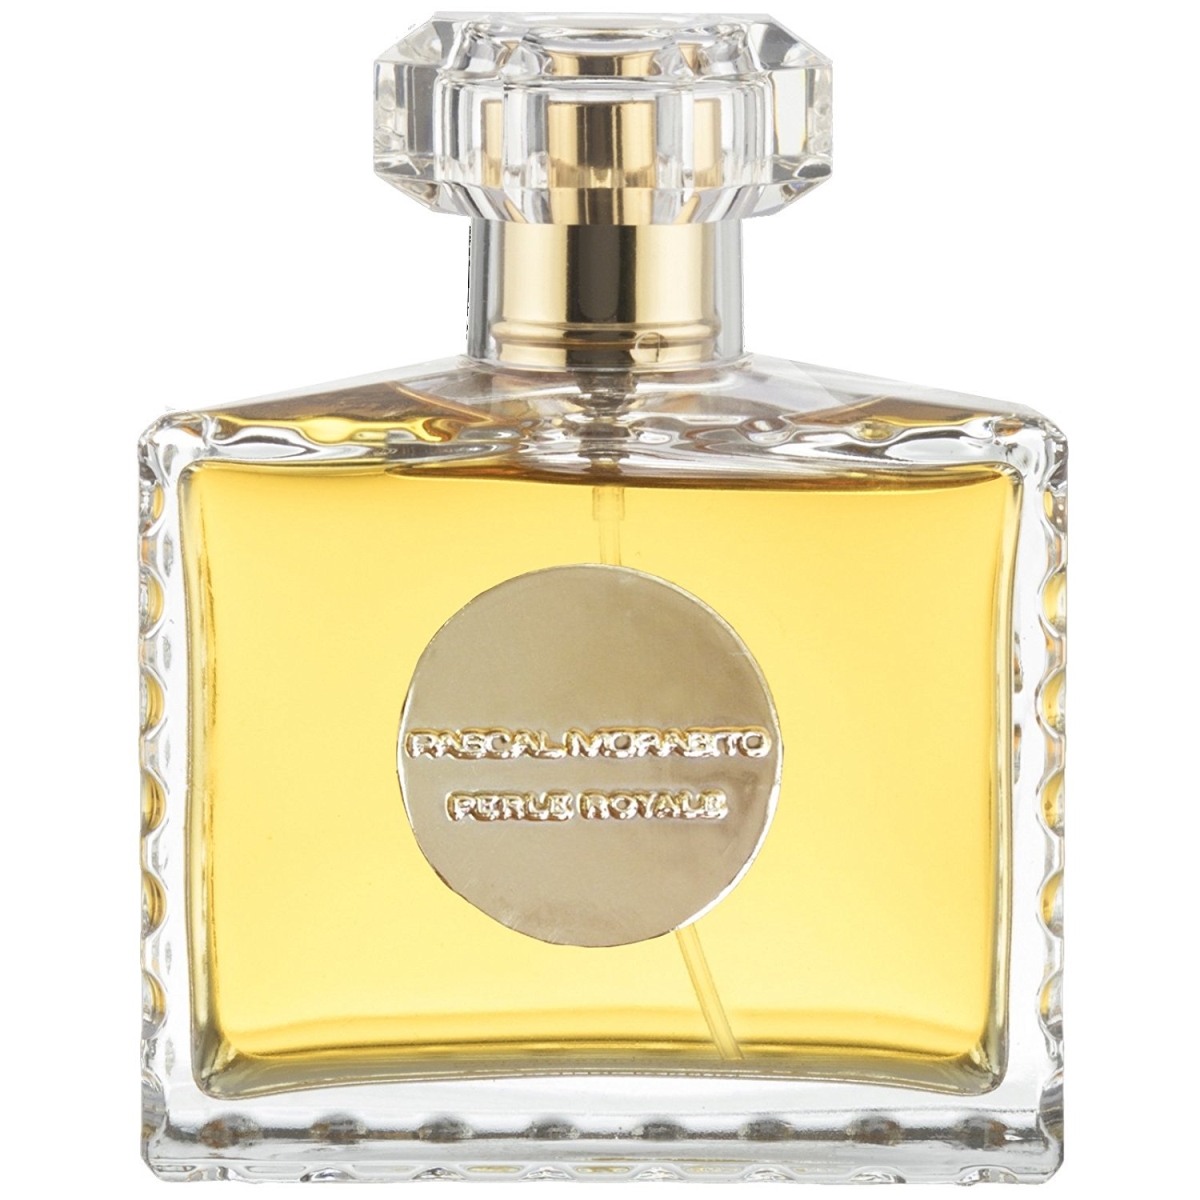 300904 3.3 Oz Perle Royale Eau De Parfum Spray For Women